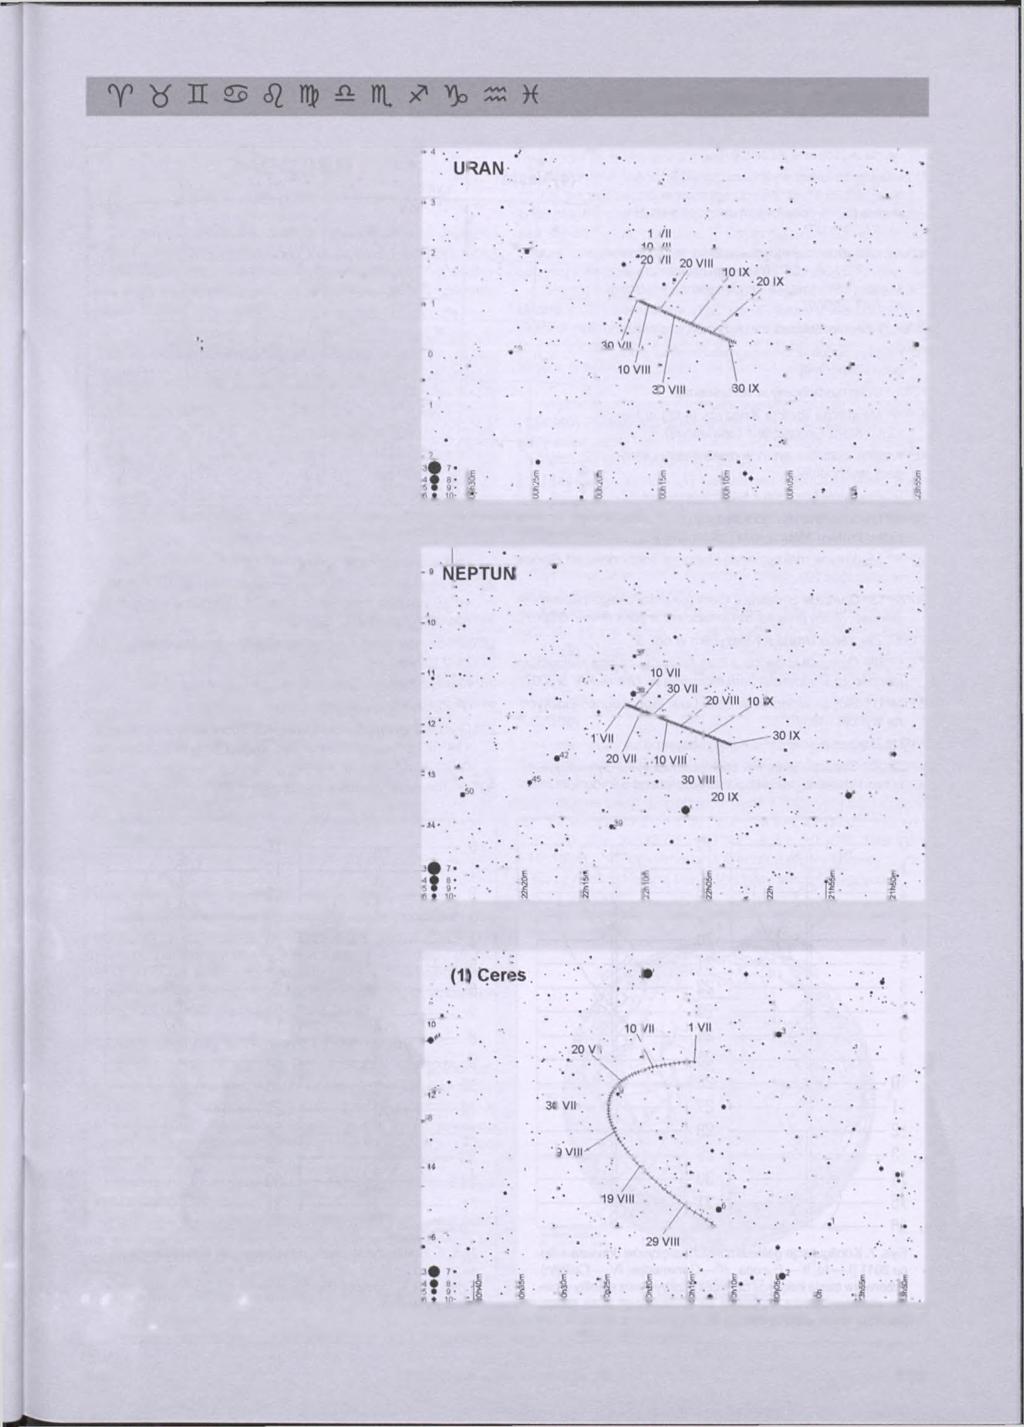 kalendarz astronomiczny 2011 czorem w gwiazdozbiorze Strzelca, jednakże jej jasność wynosi jedynie 14,2mi do jej zaobserwowania niezbędny jest teleskop o średnicy zwierciadła przynajmniej 20 cm: 10